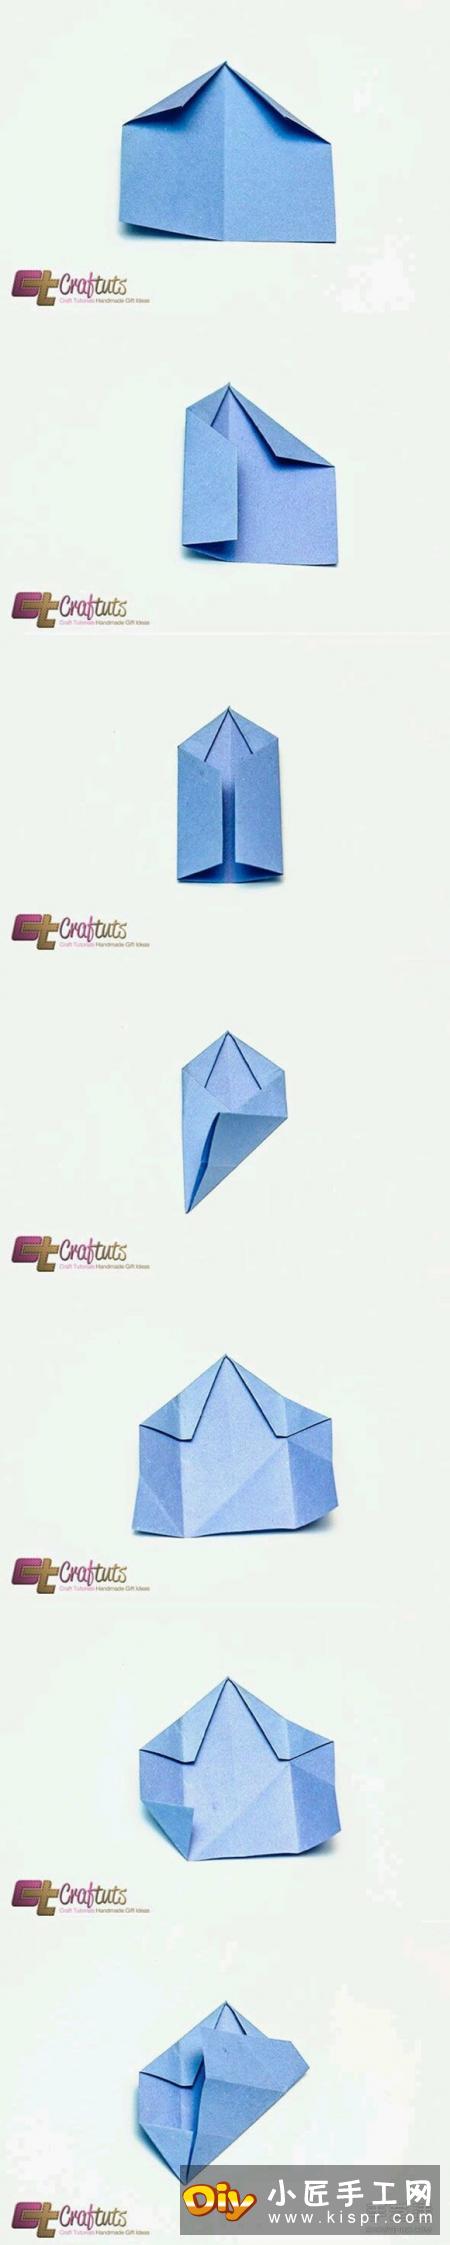 折纸五角星花图解 五角星花的折法详细步骤